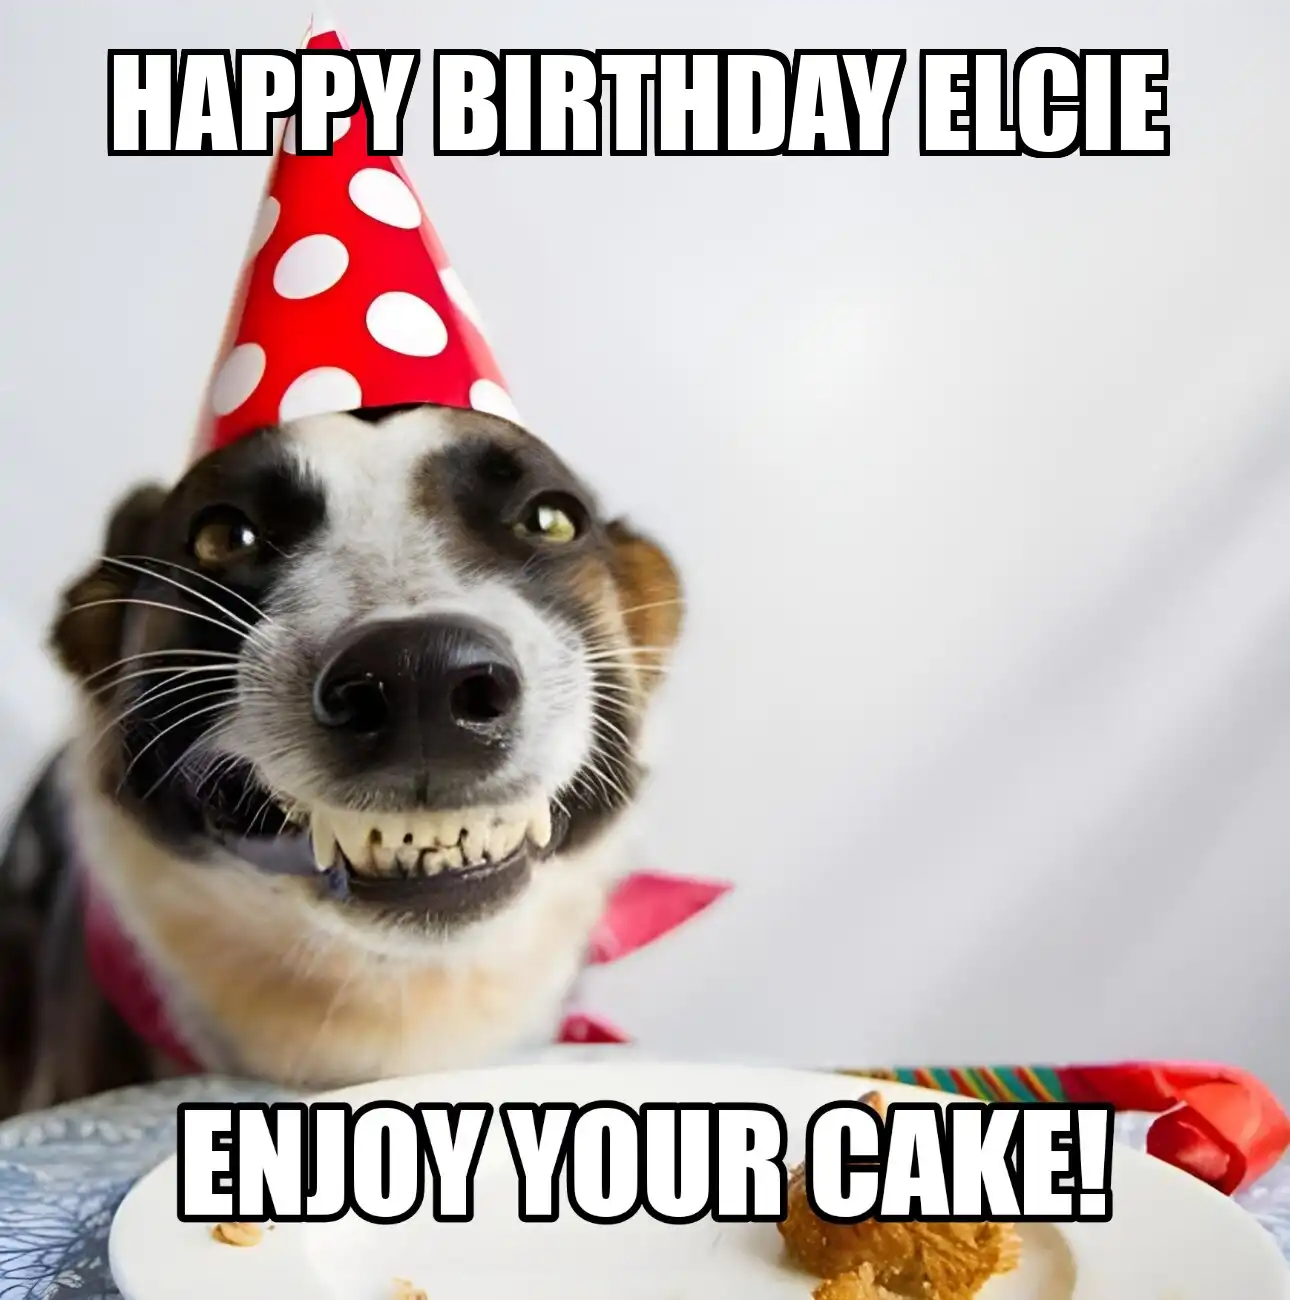 Happy Birthday Elcie Enjoy Your Cake Dog Meme